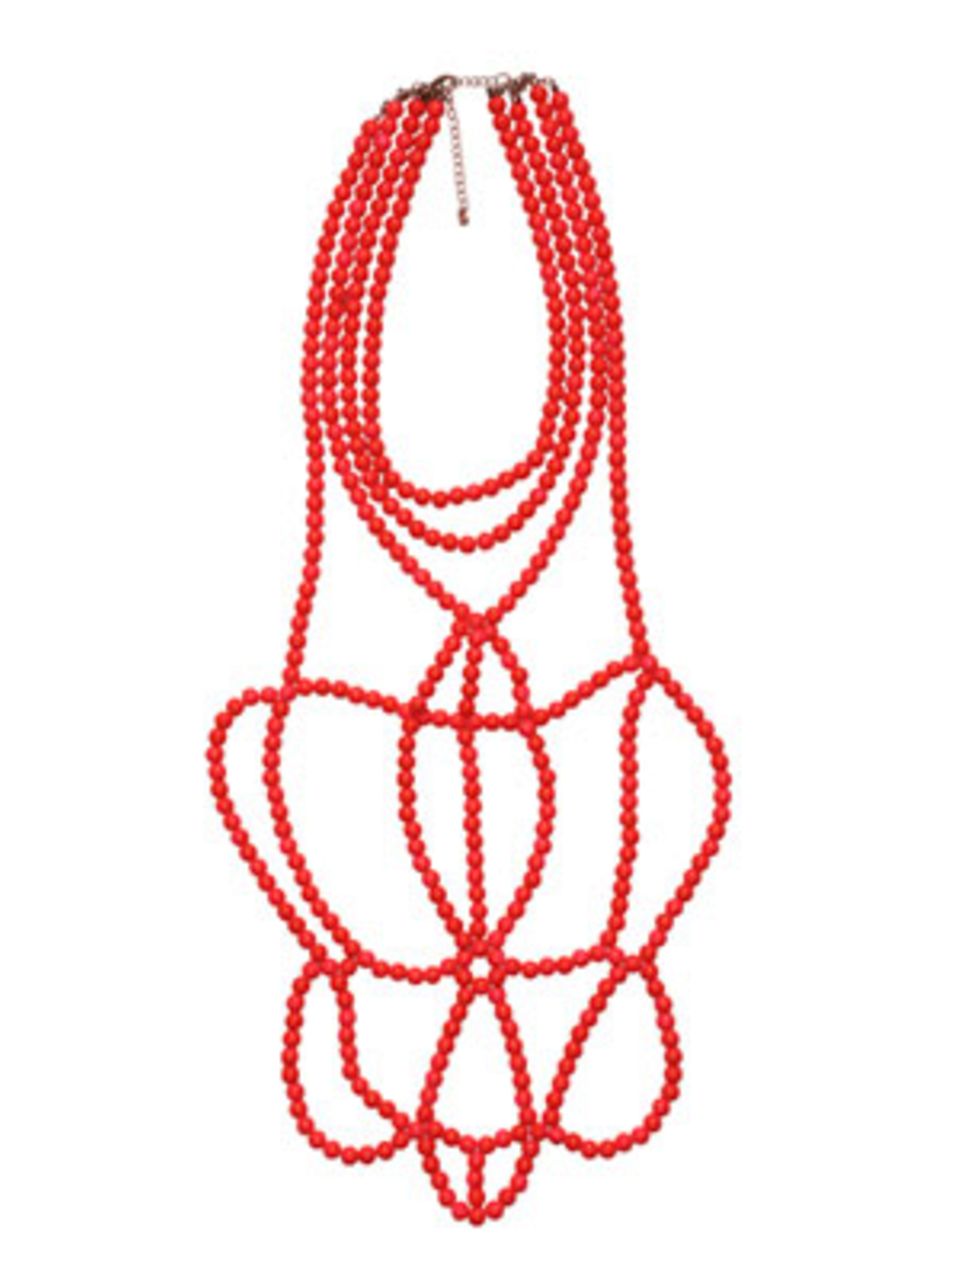 Raffiniertes Perlen-Collier in Rot von H&M, um 20 Euro.